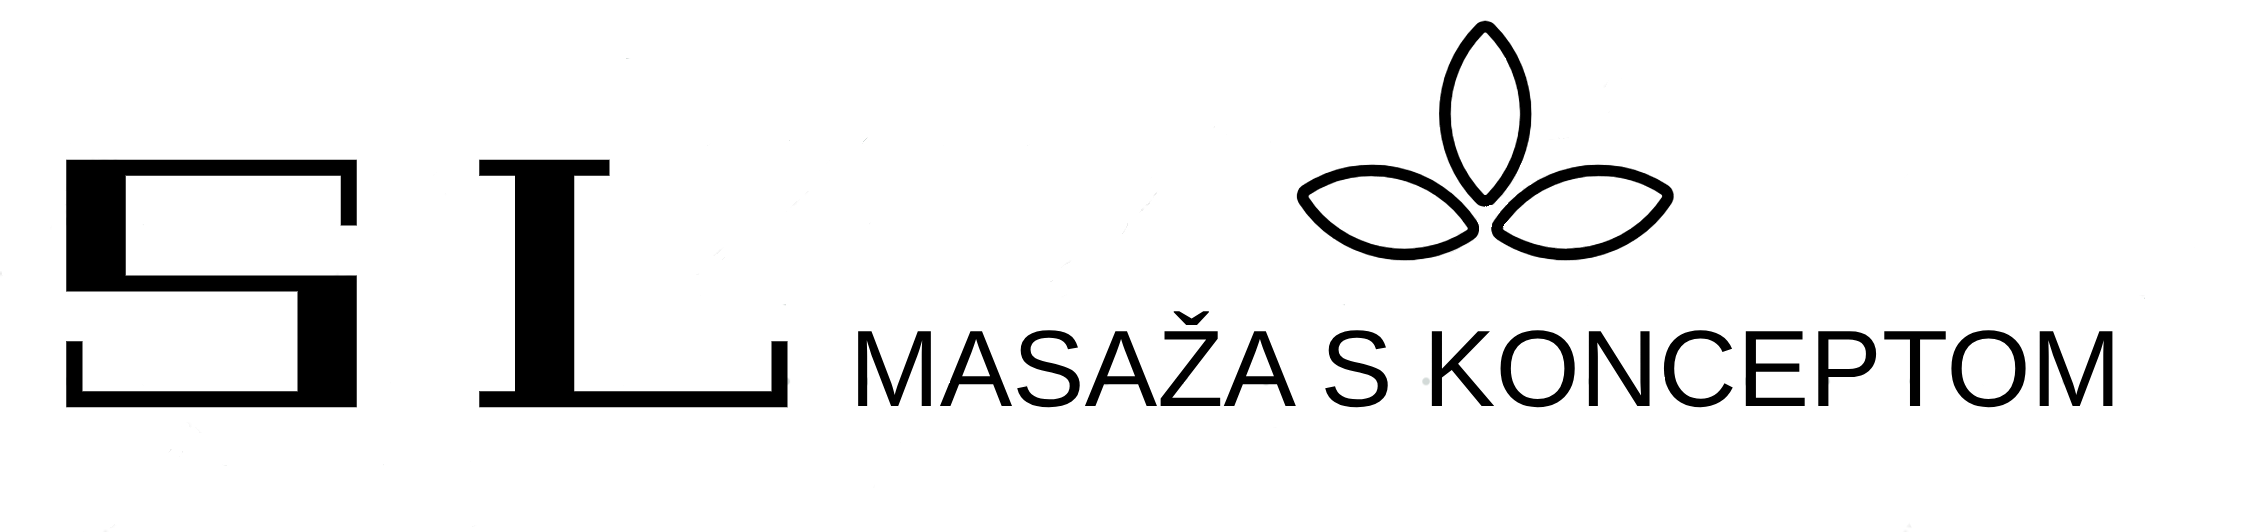 masaze simona logo 